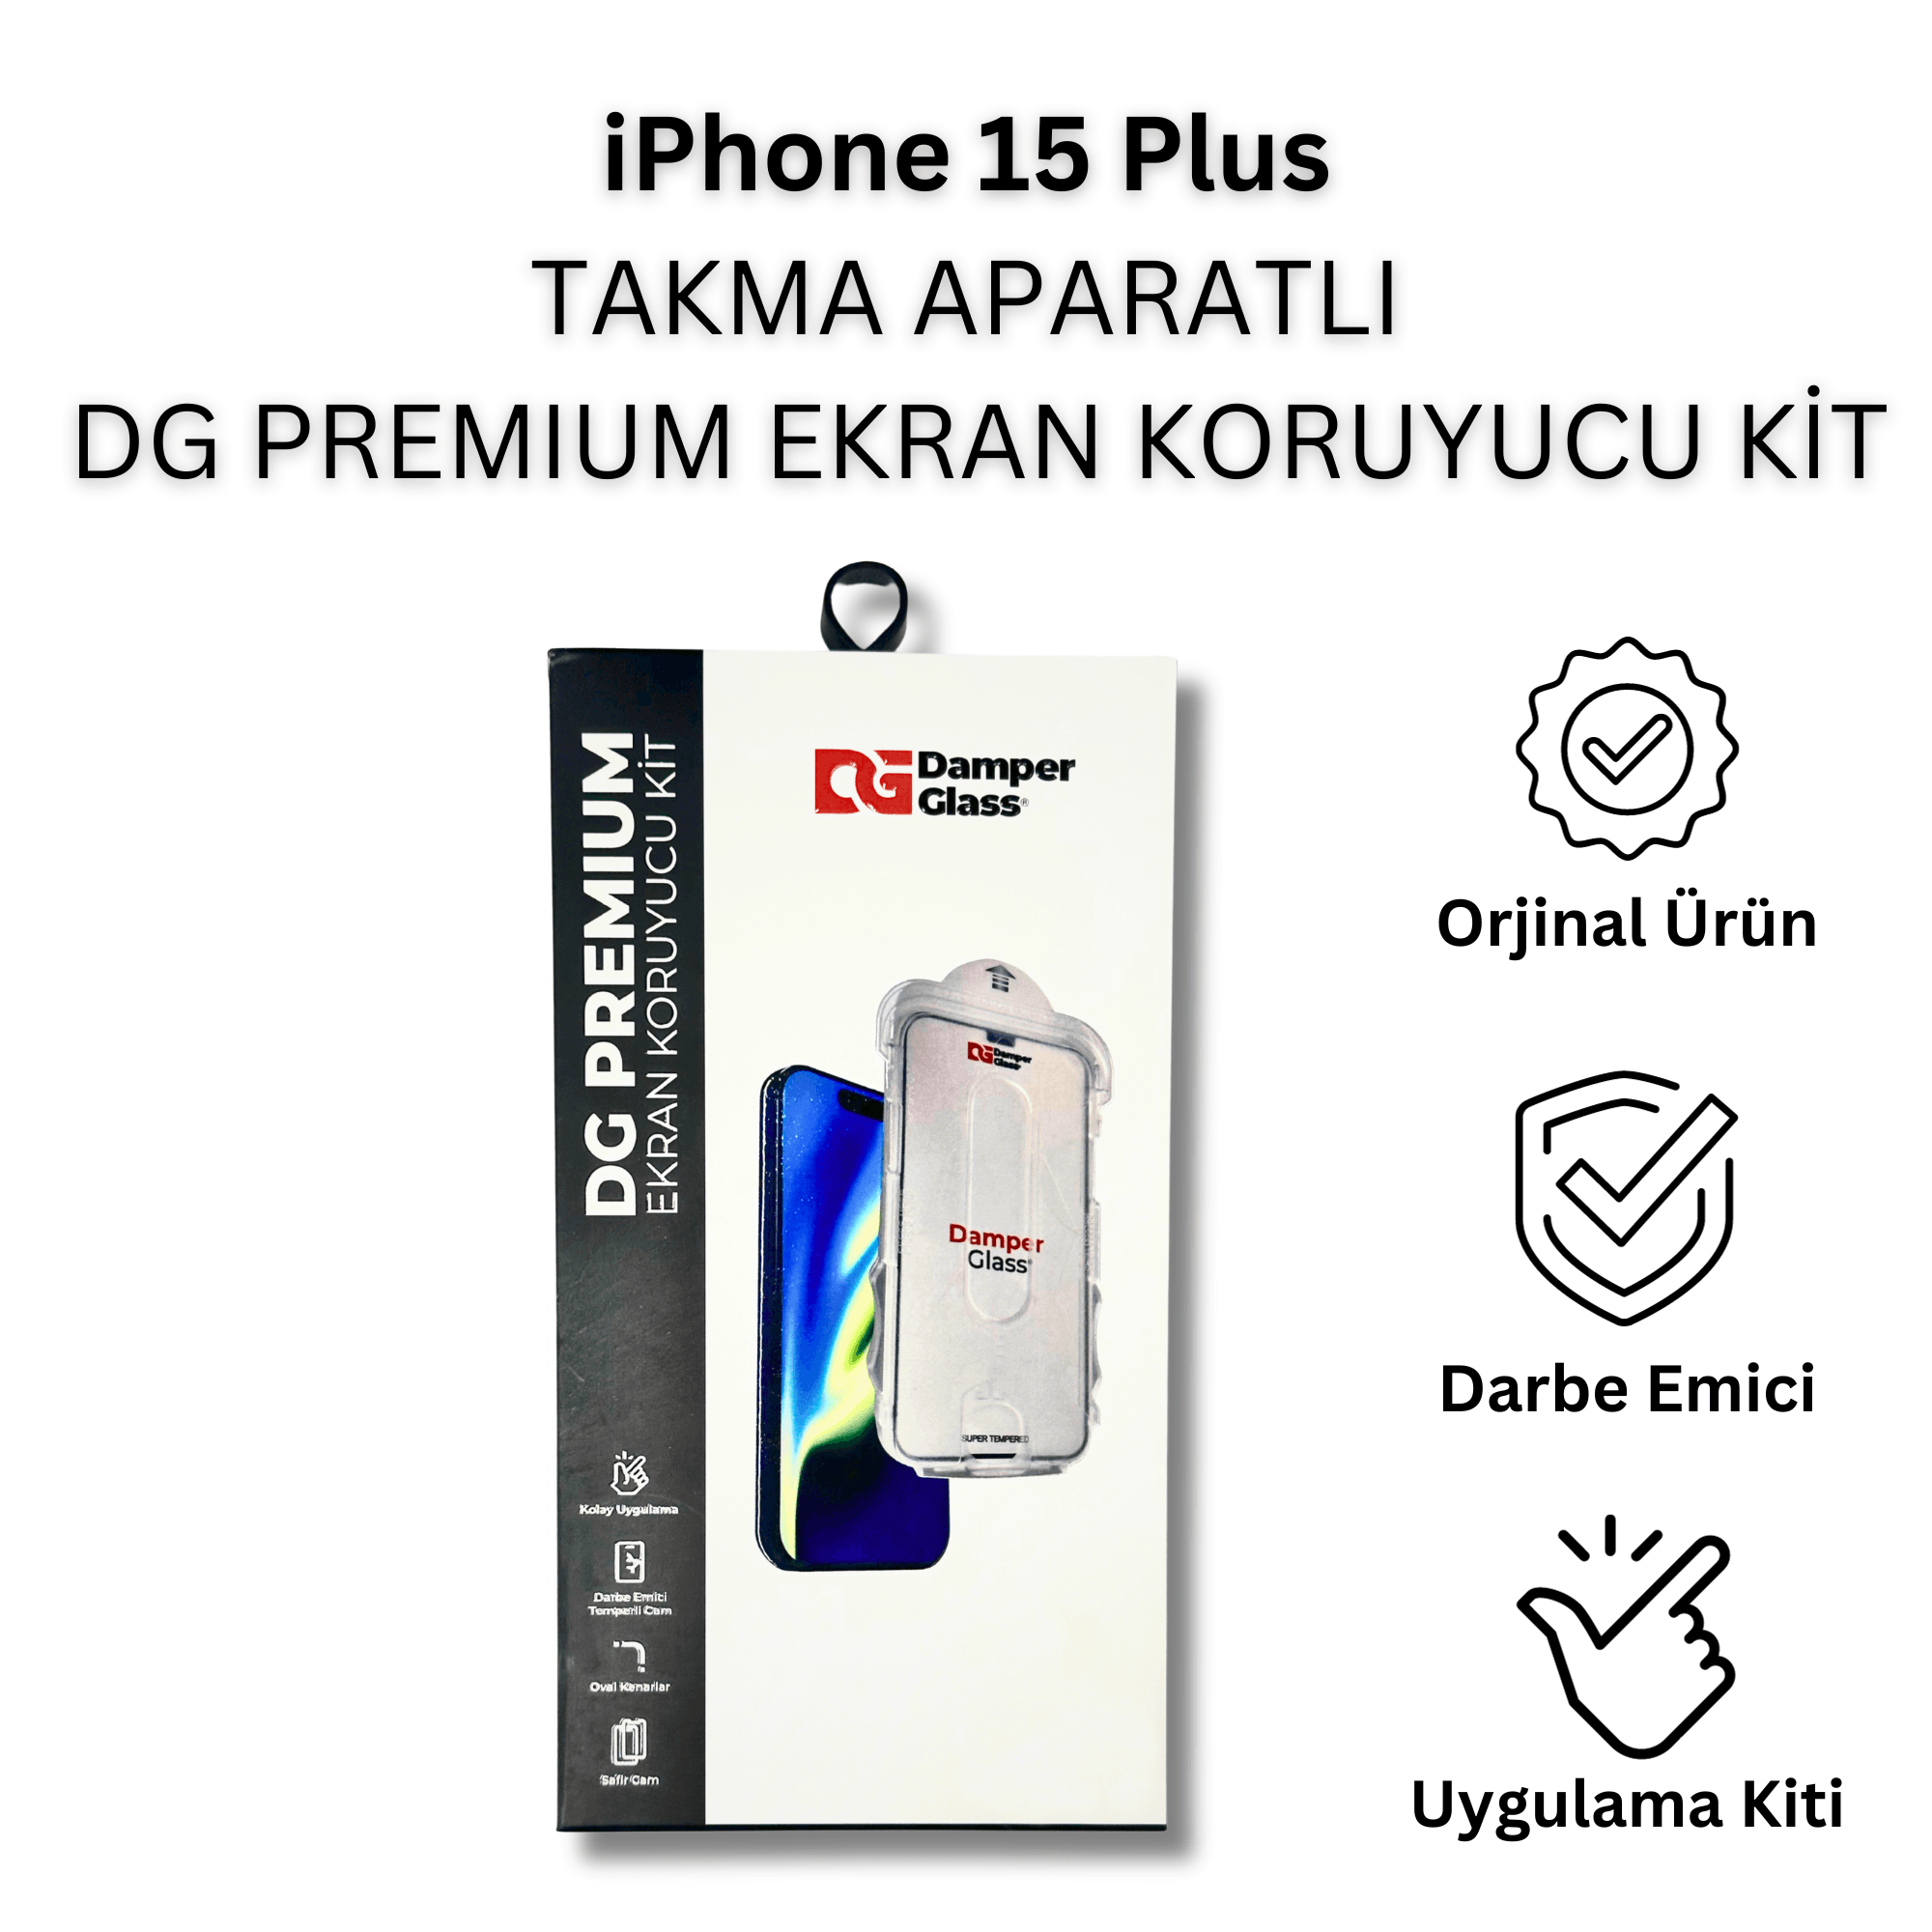 iPhone 15 Plus DG Premium Takma Aparatlı Darbe Emici Ekran Koruyucu Kit